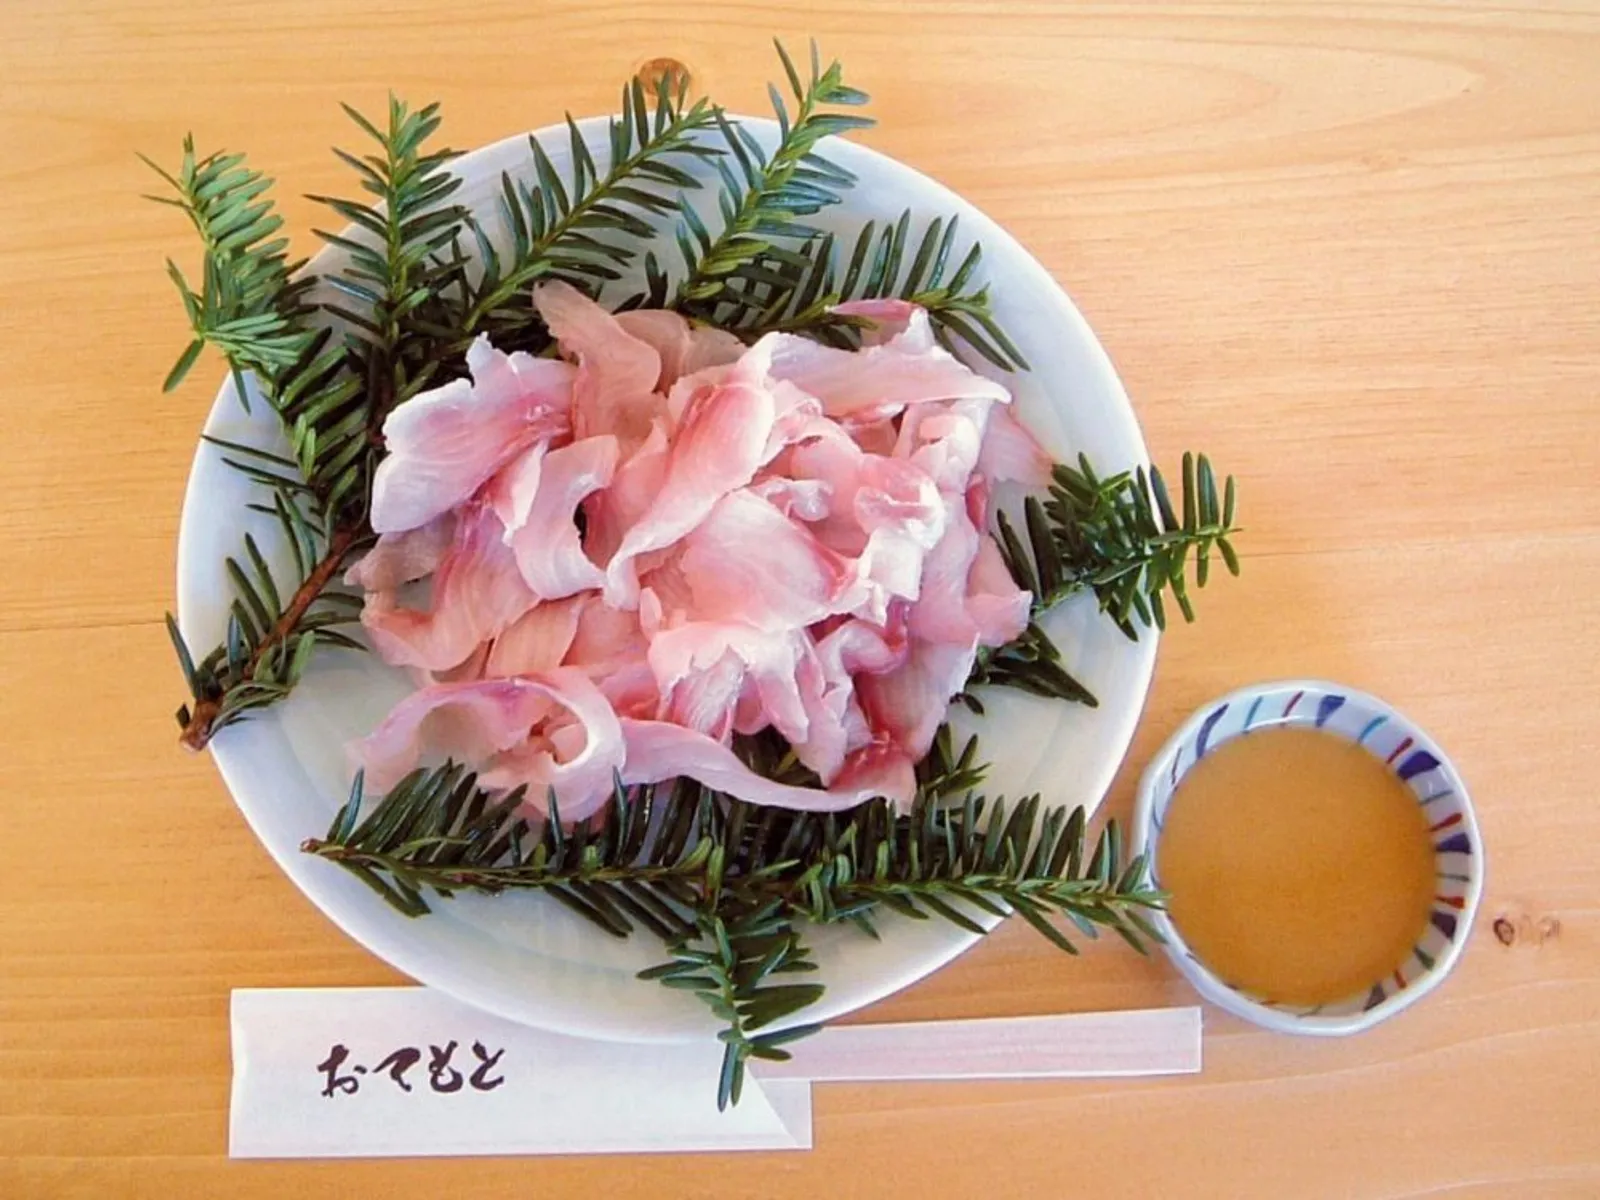 10 Masakan Unik Jepang yang Menggunakan Bahan Mentah, Berani Coba?